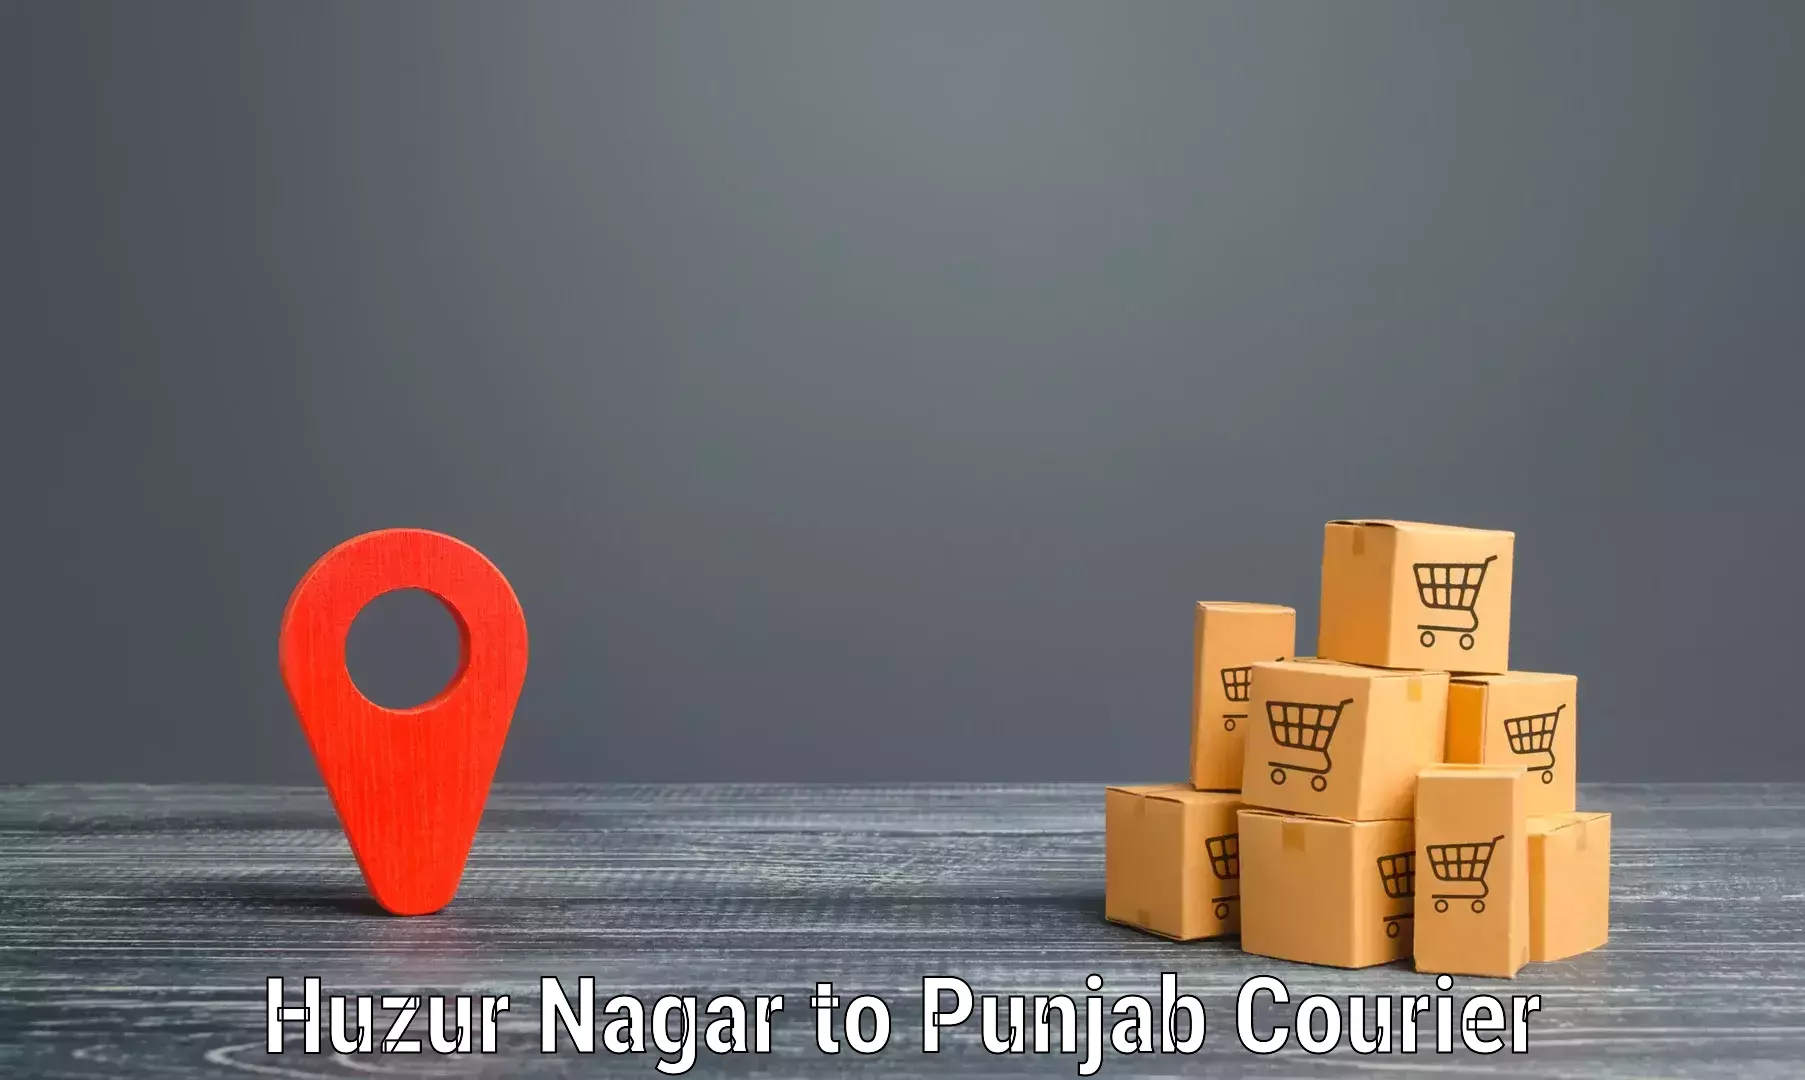 Rapid shipping services Huzur Nagar to Punjab